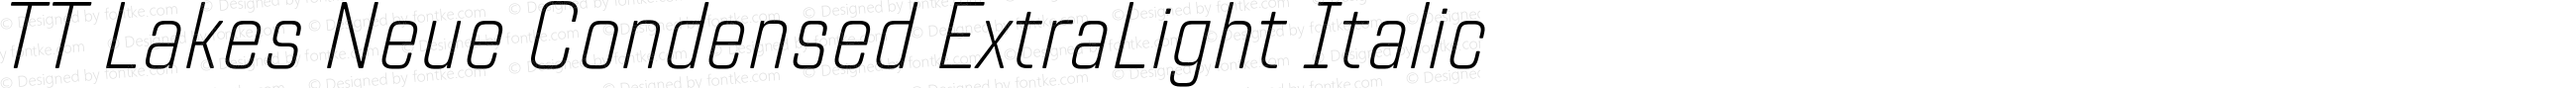 TT Lakes Neue Condensed ExtraLight Italic